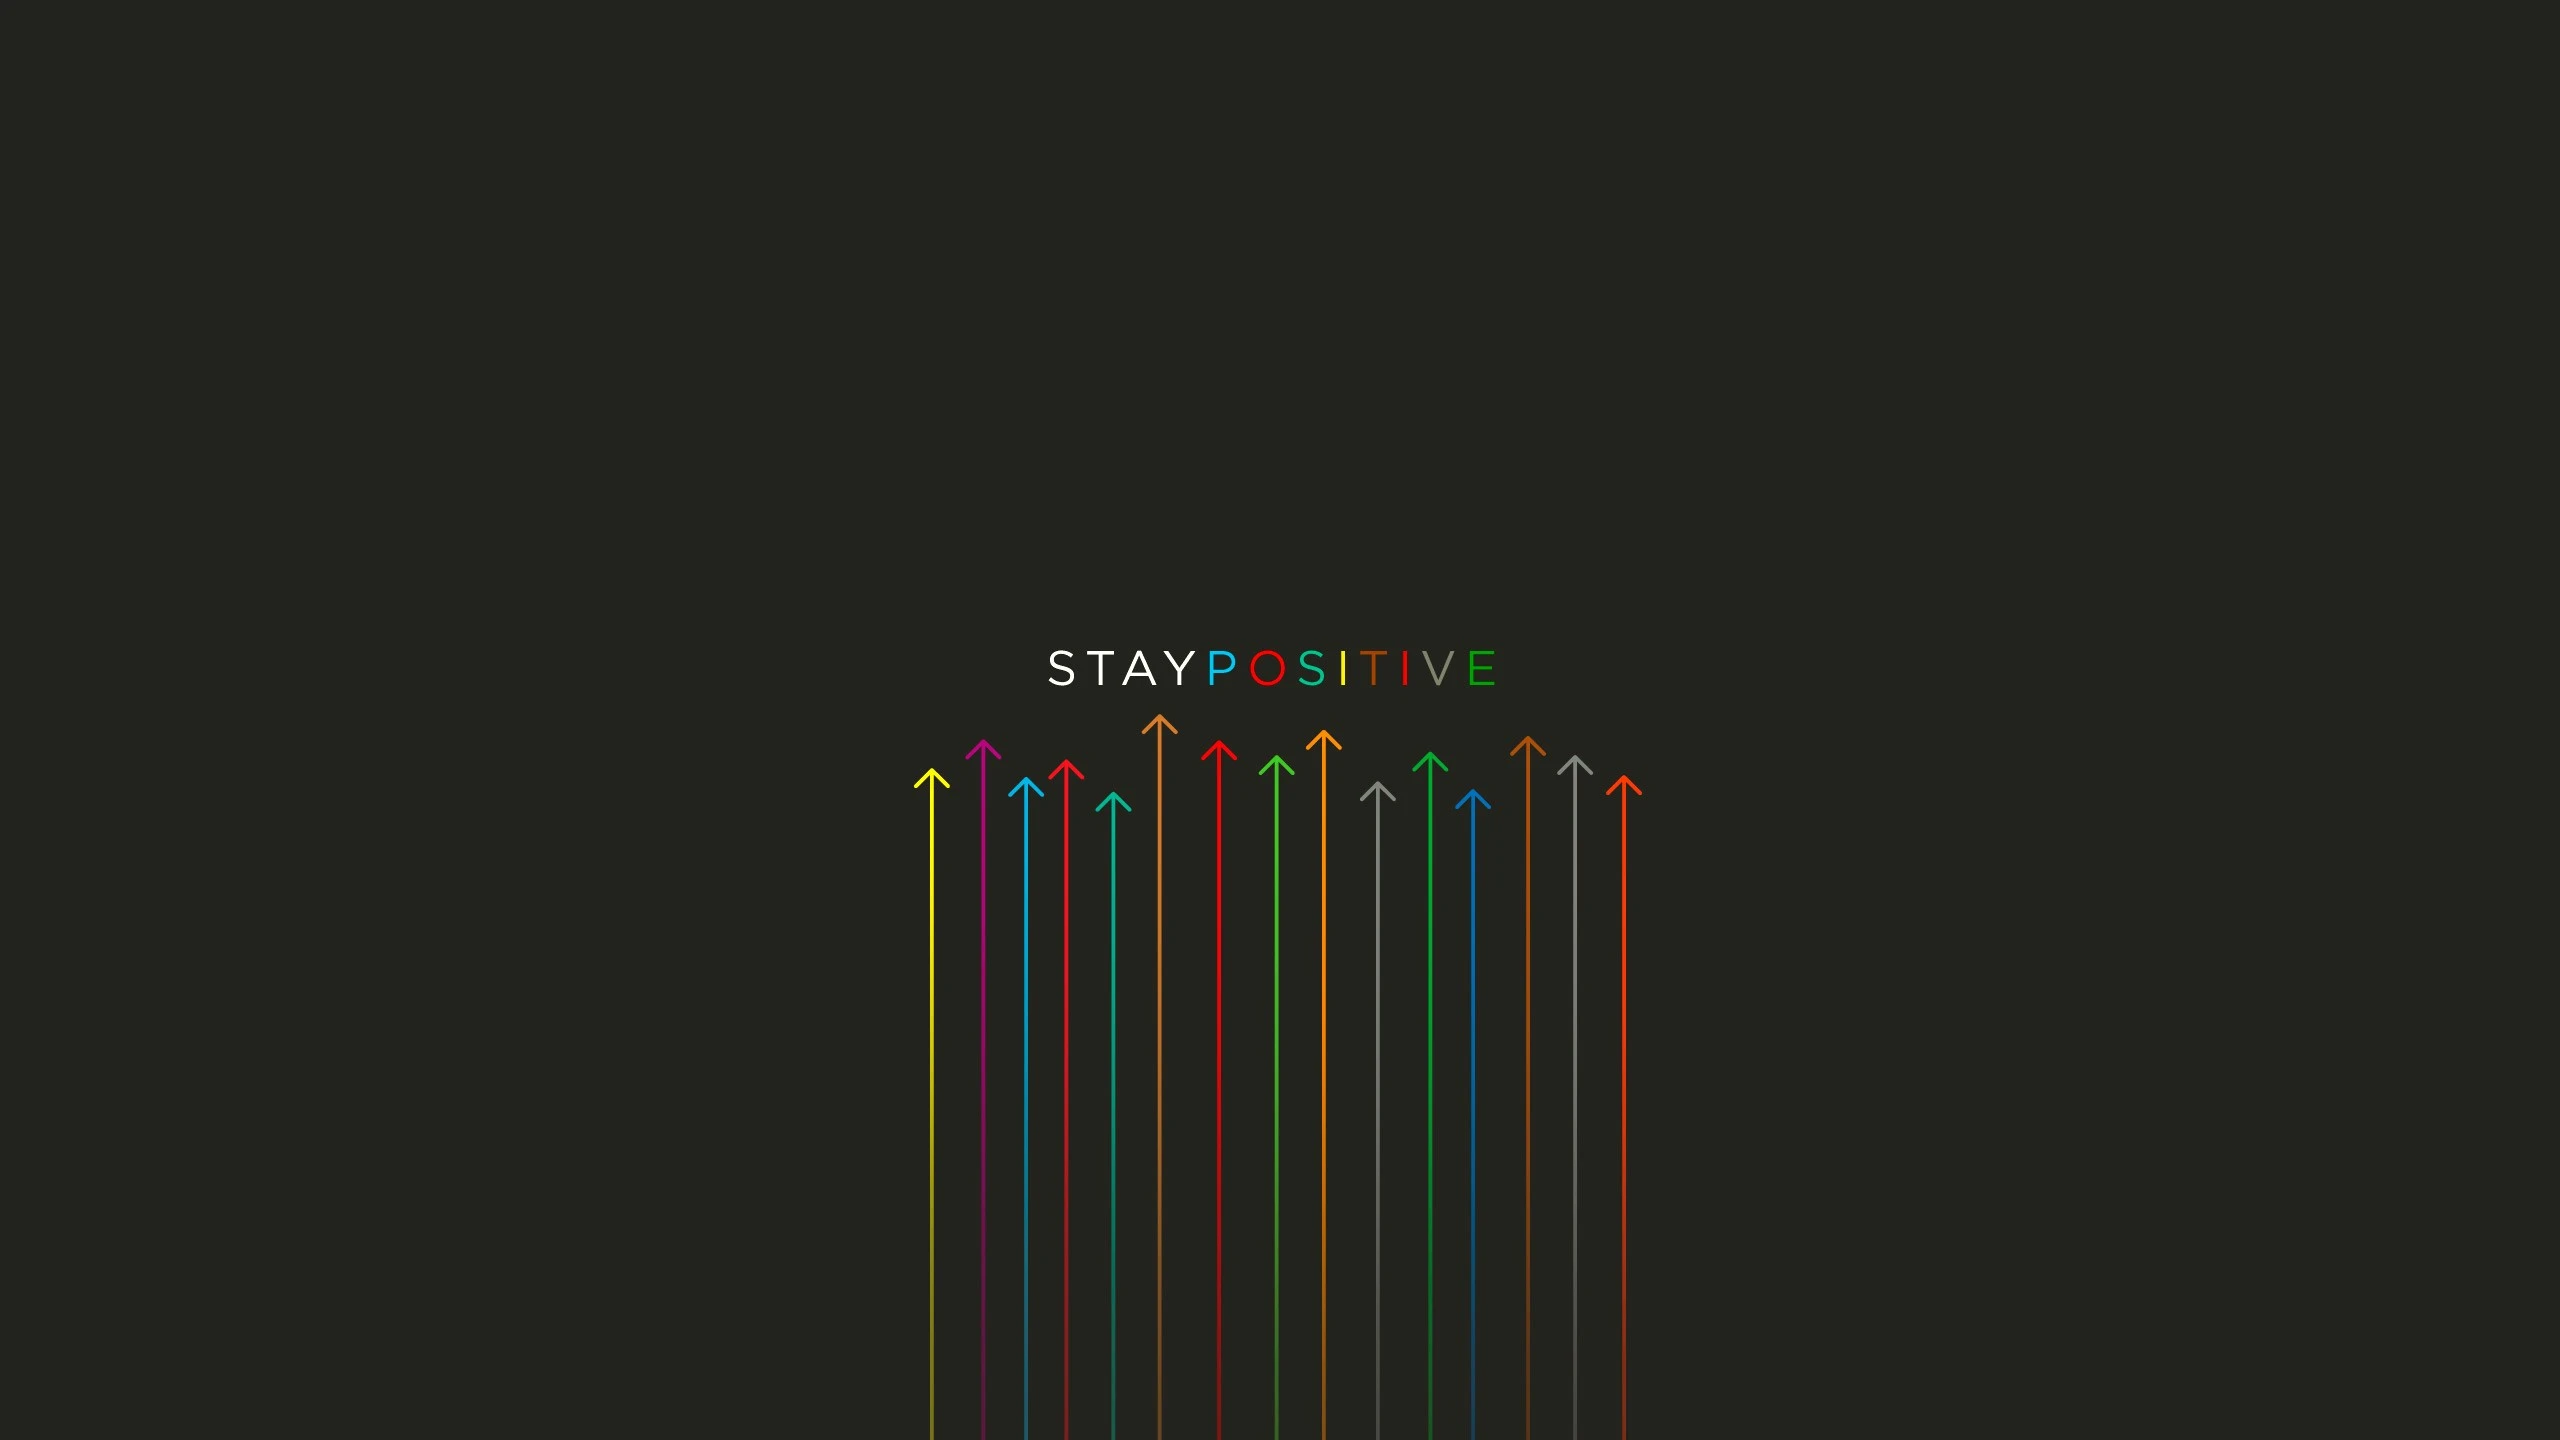 Stay Positive771193304 - Stay Positive - Stay, Positive, Liberate